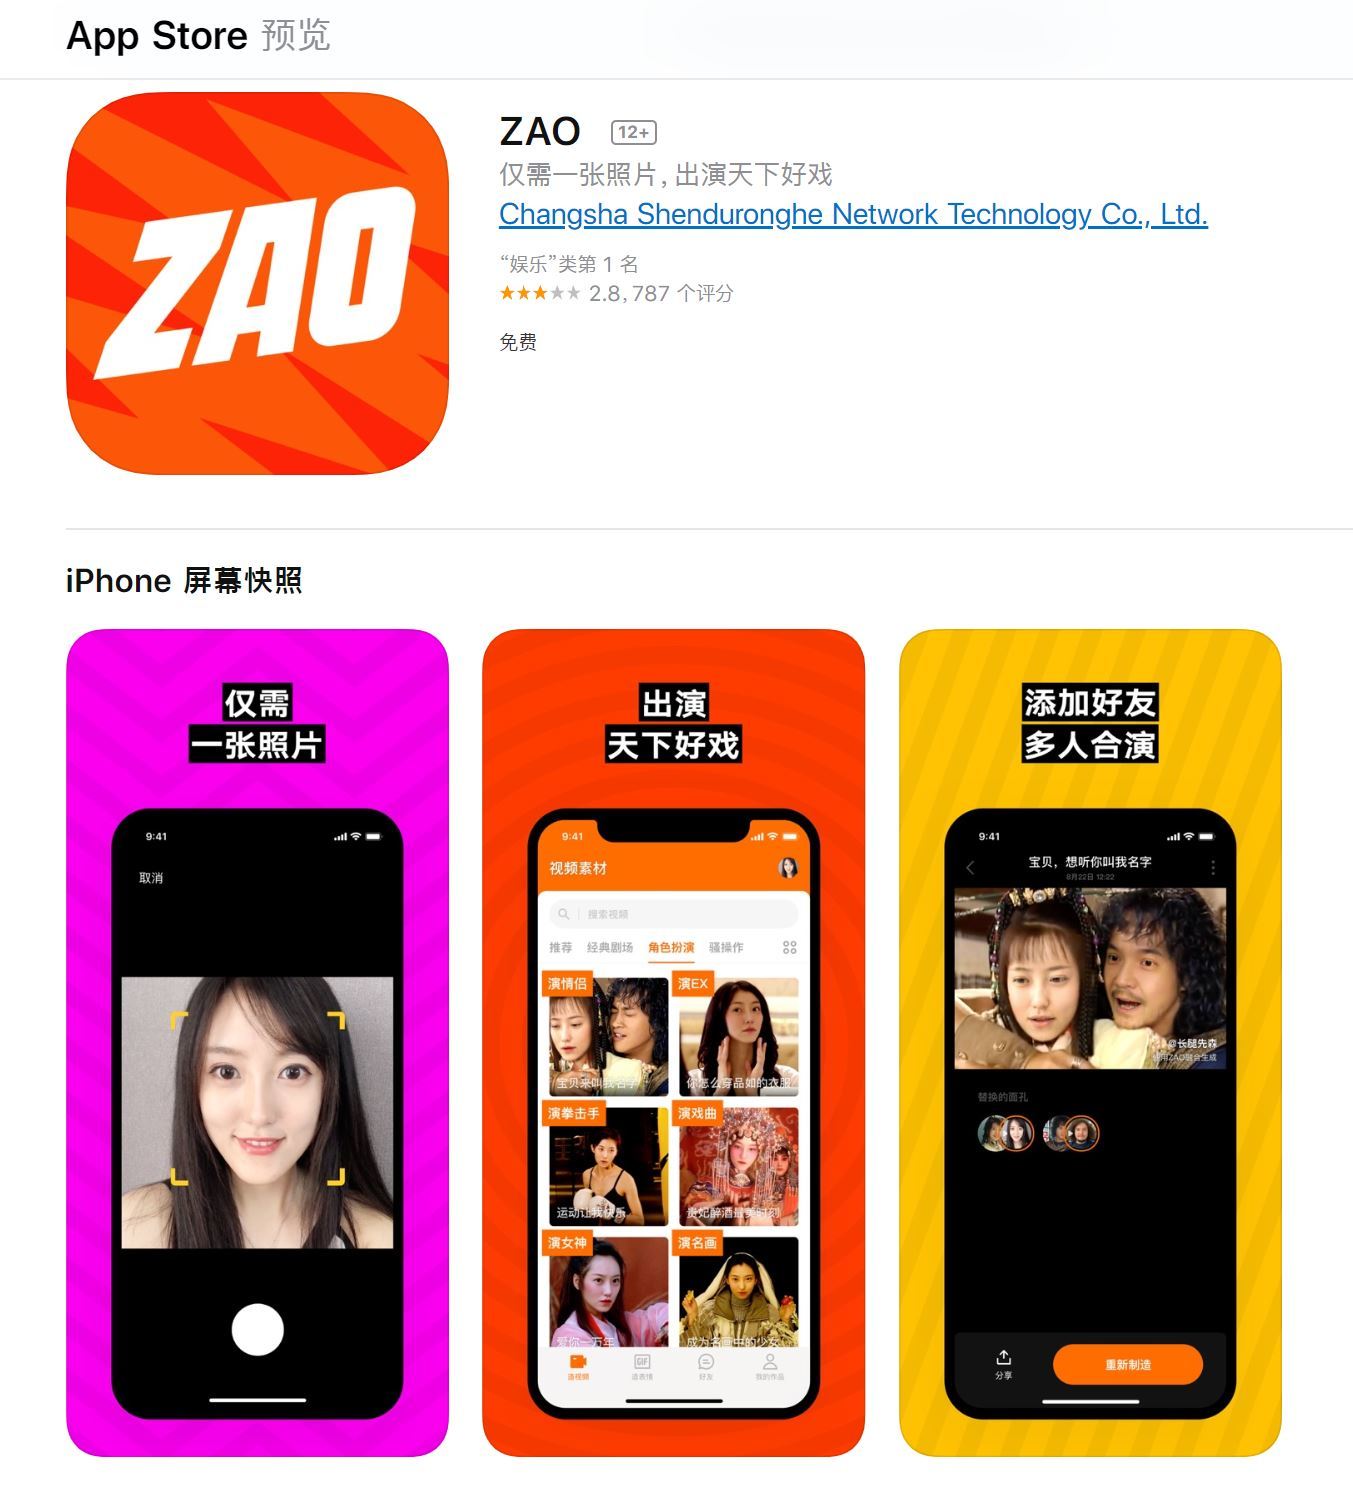 中国の人気ディープフェイクアプリ「ZAO」、プライバシーで批判され規約改訂